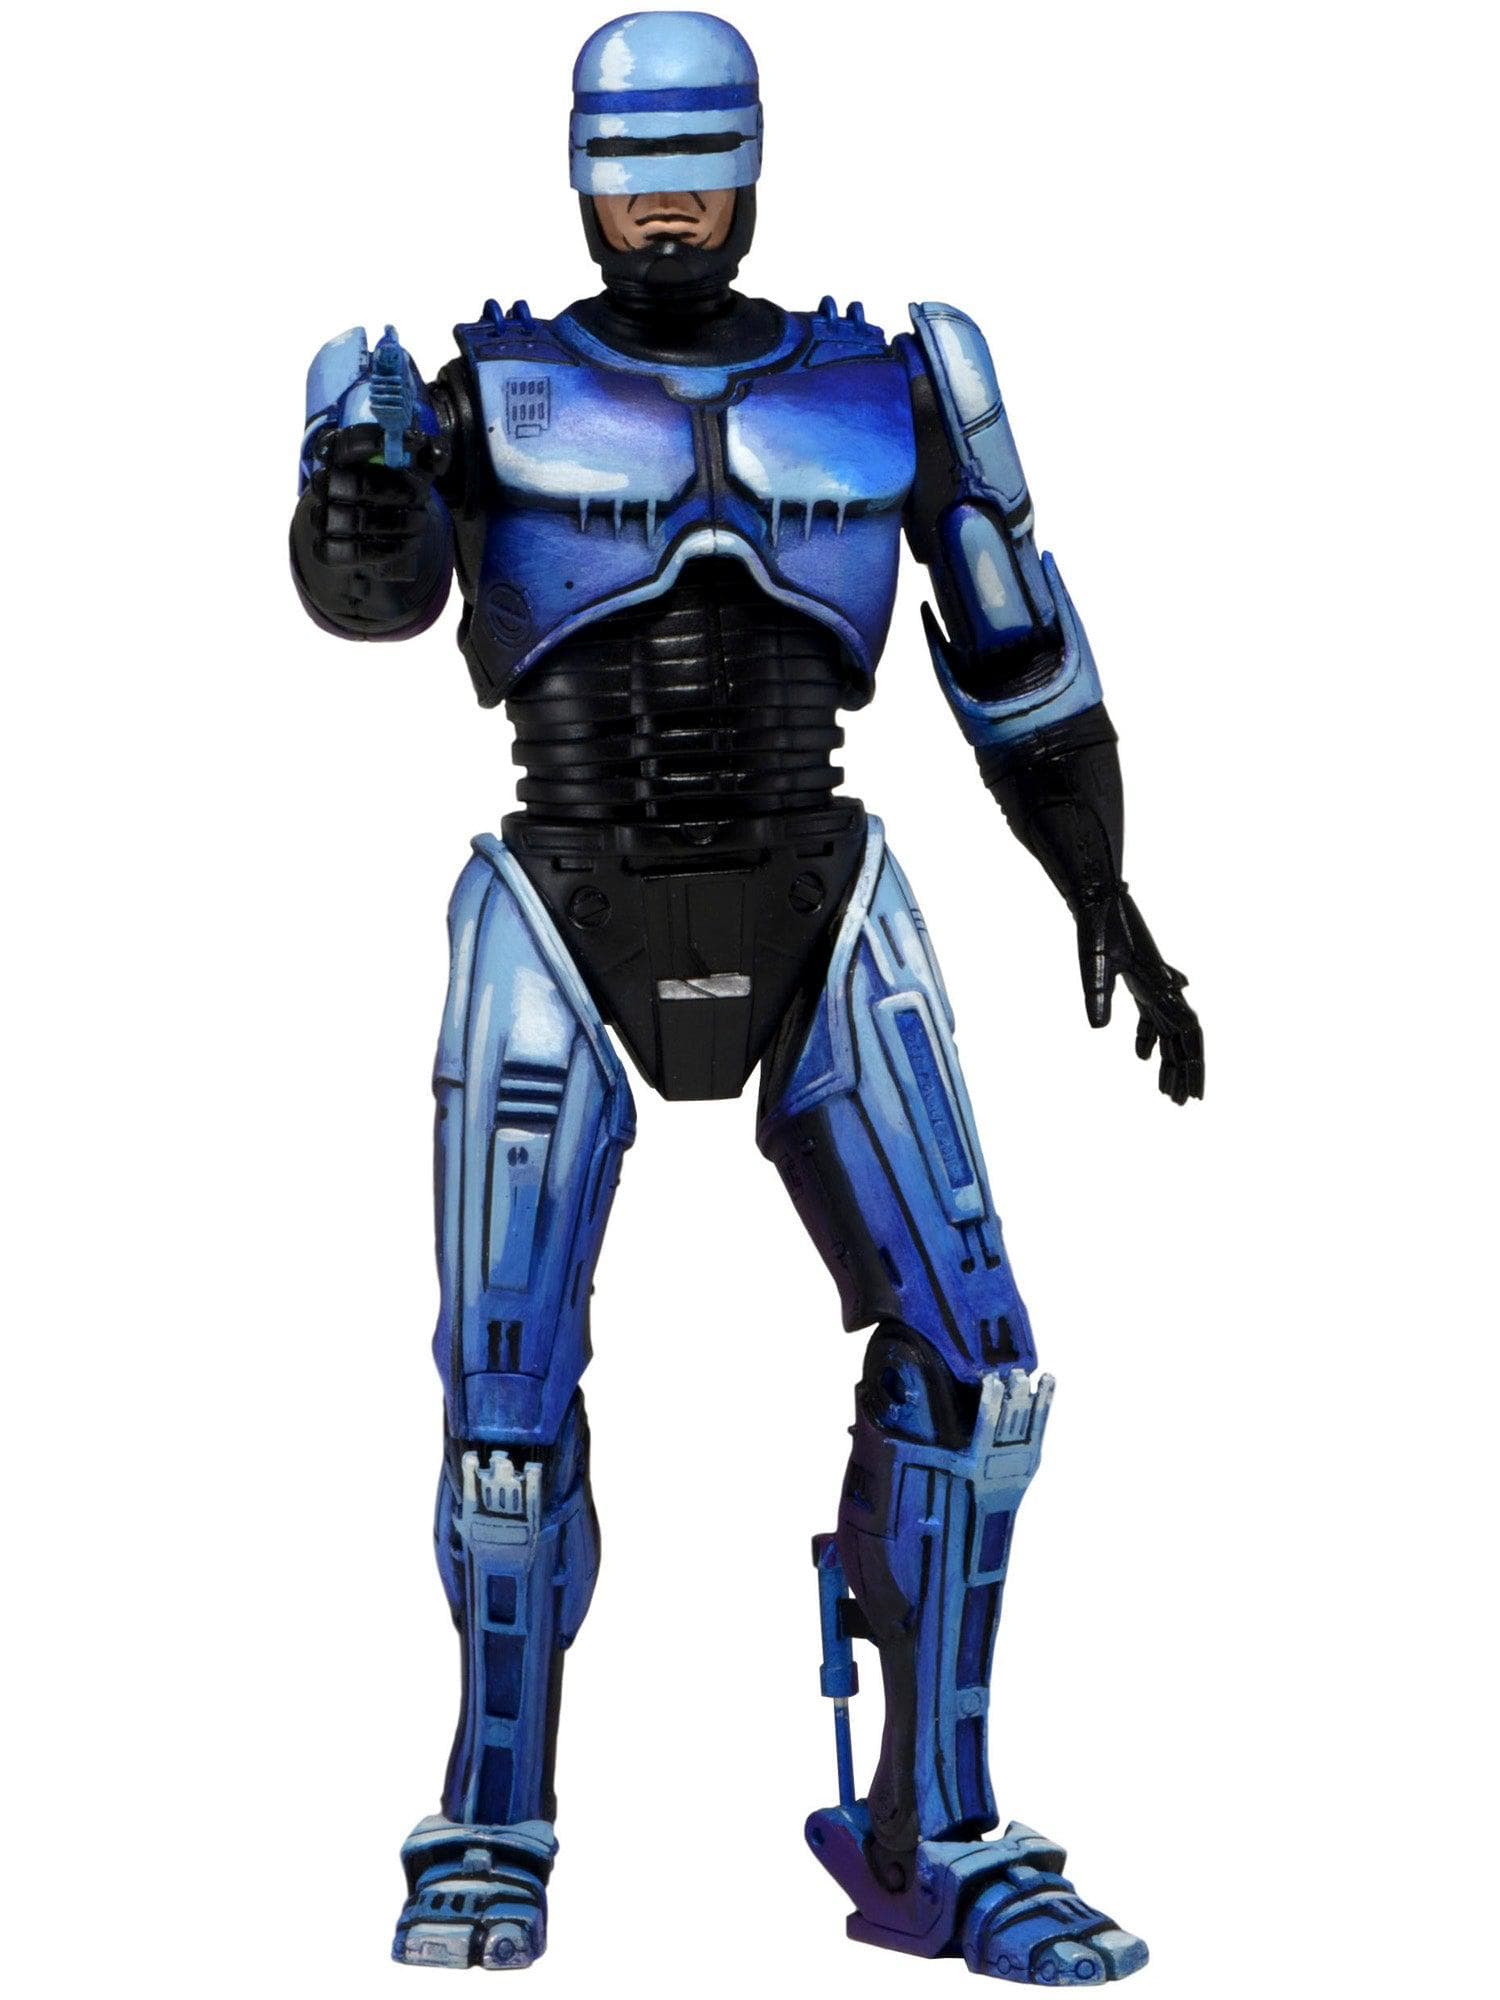 NECA - Robocop Vs Terminator (93' Video Game) - 7" Scale Action Figure - Series 2 Robocop w/ Flamethrower - costumes.com